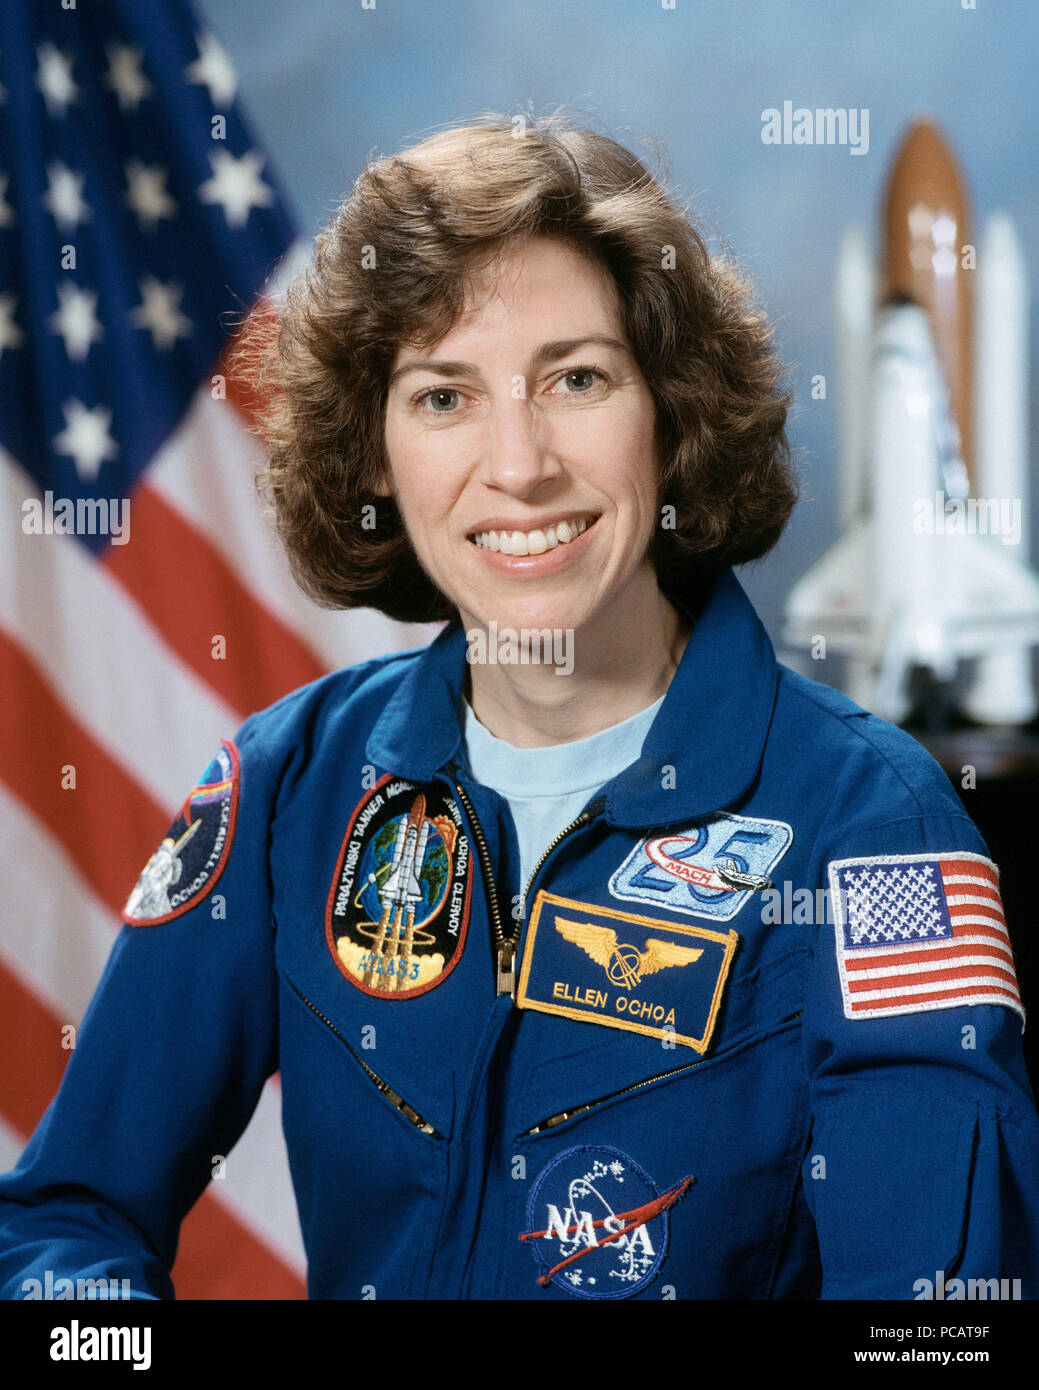 Portrait of NASA Astronaut Ellen Ochoa wearing a blue flight suit. Stock Photo